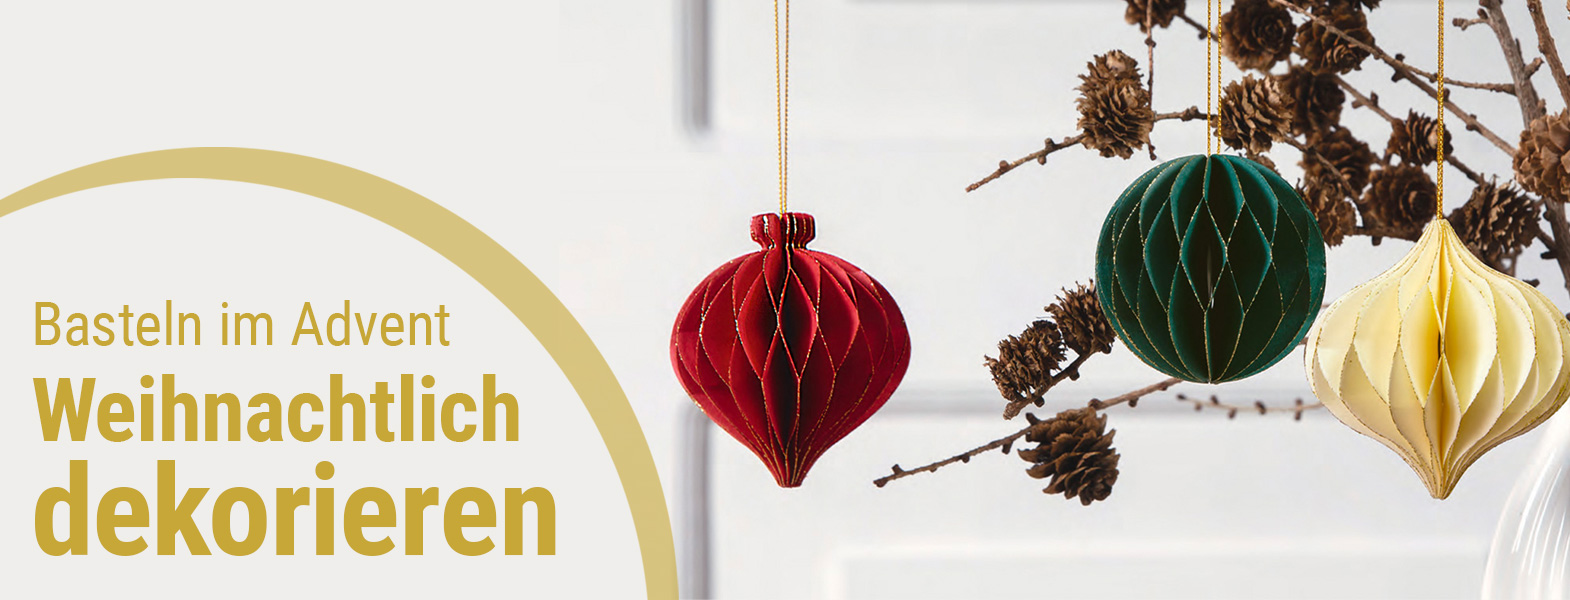 Drei Wabenbälle Christmas von Folia hängen an einem Trockengesteck als Winterdekoration in den Farben Rot, Grün und Creme.